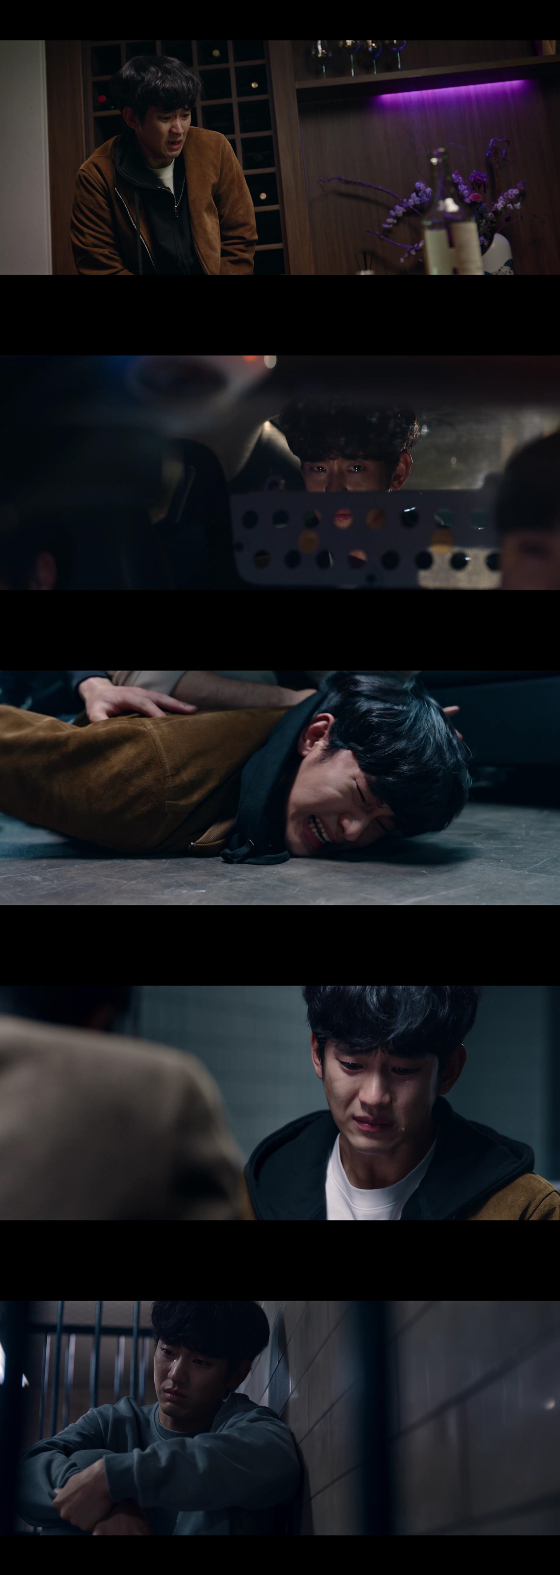 쿠팡플레이 시리즈 '어느 날'에서 김현수 역을 맡은 김수현./사진=쿠팡플레이 시리즈 '어느 날' 방송 화면 캡처